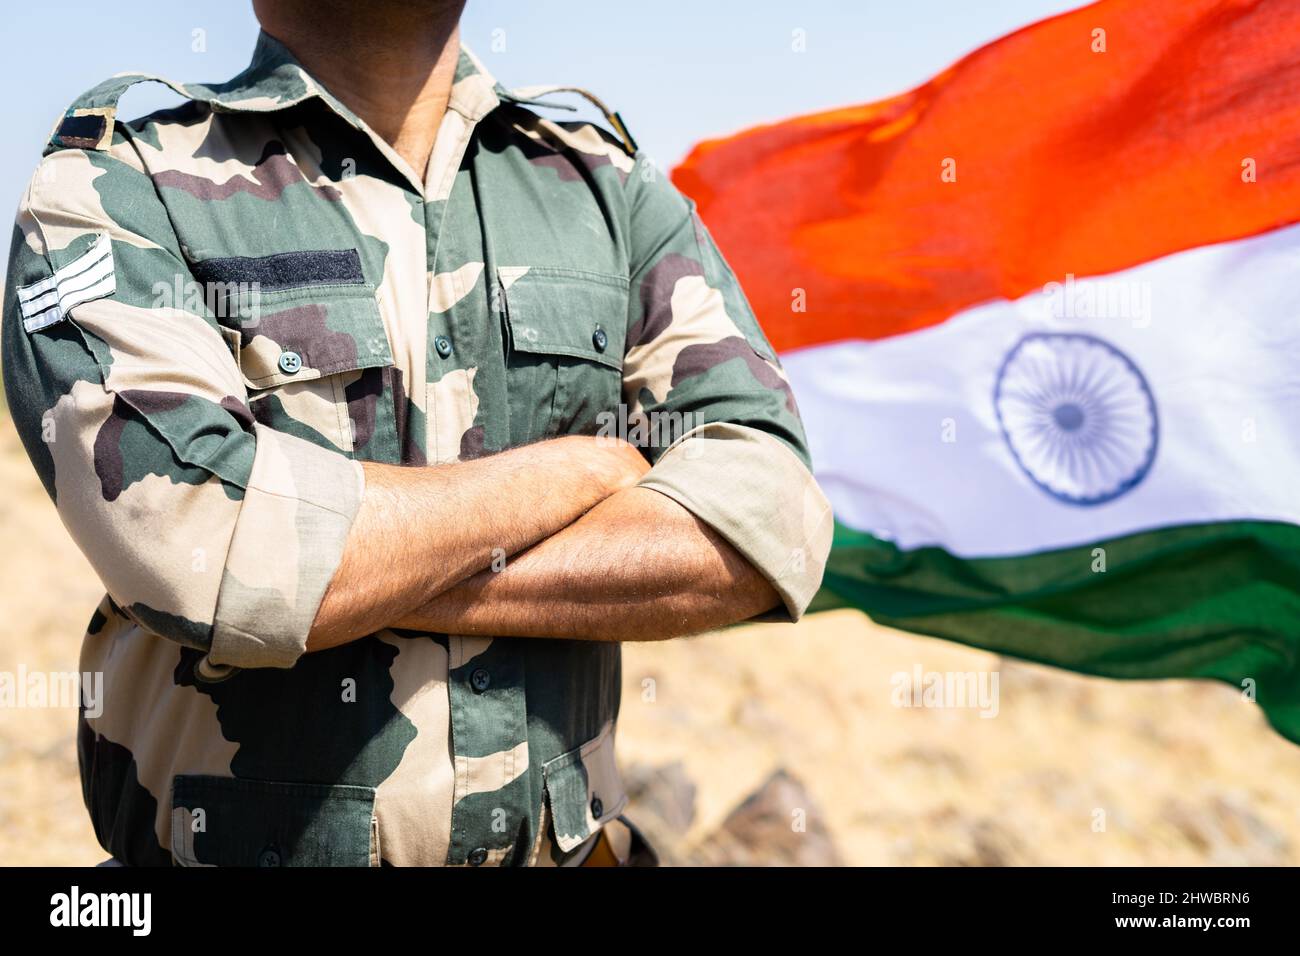 Indischer Soldat, der mit gekreuzten Armen vor der winkenden indischen Flagge steht - Konzept eines selbstbewussten, furchtlosen und stolzen Soldaten Stockfoto